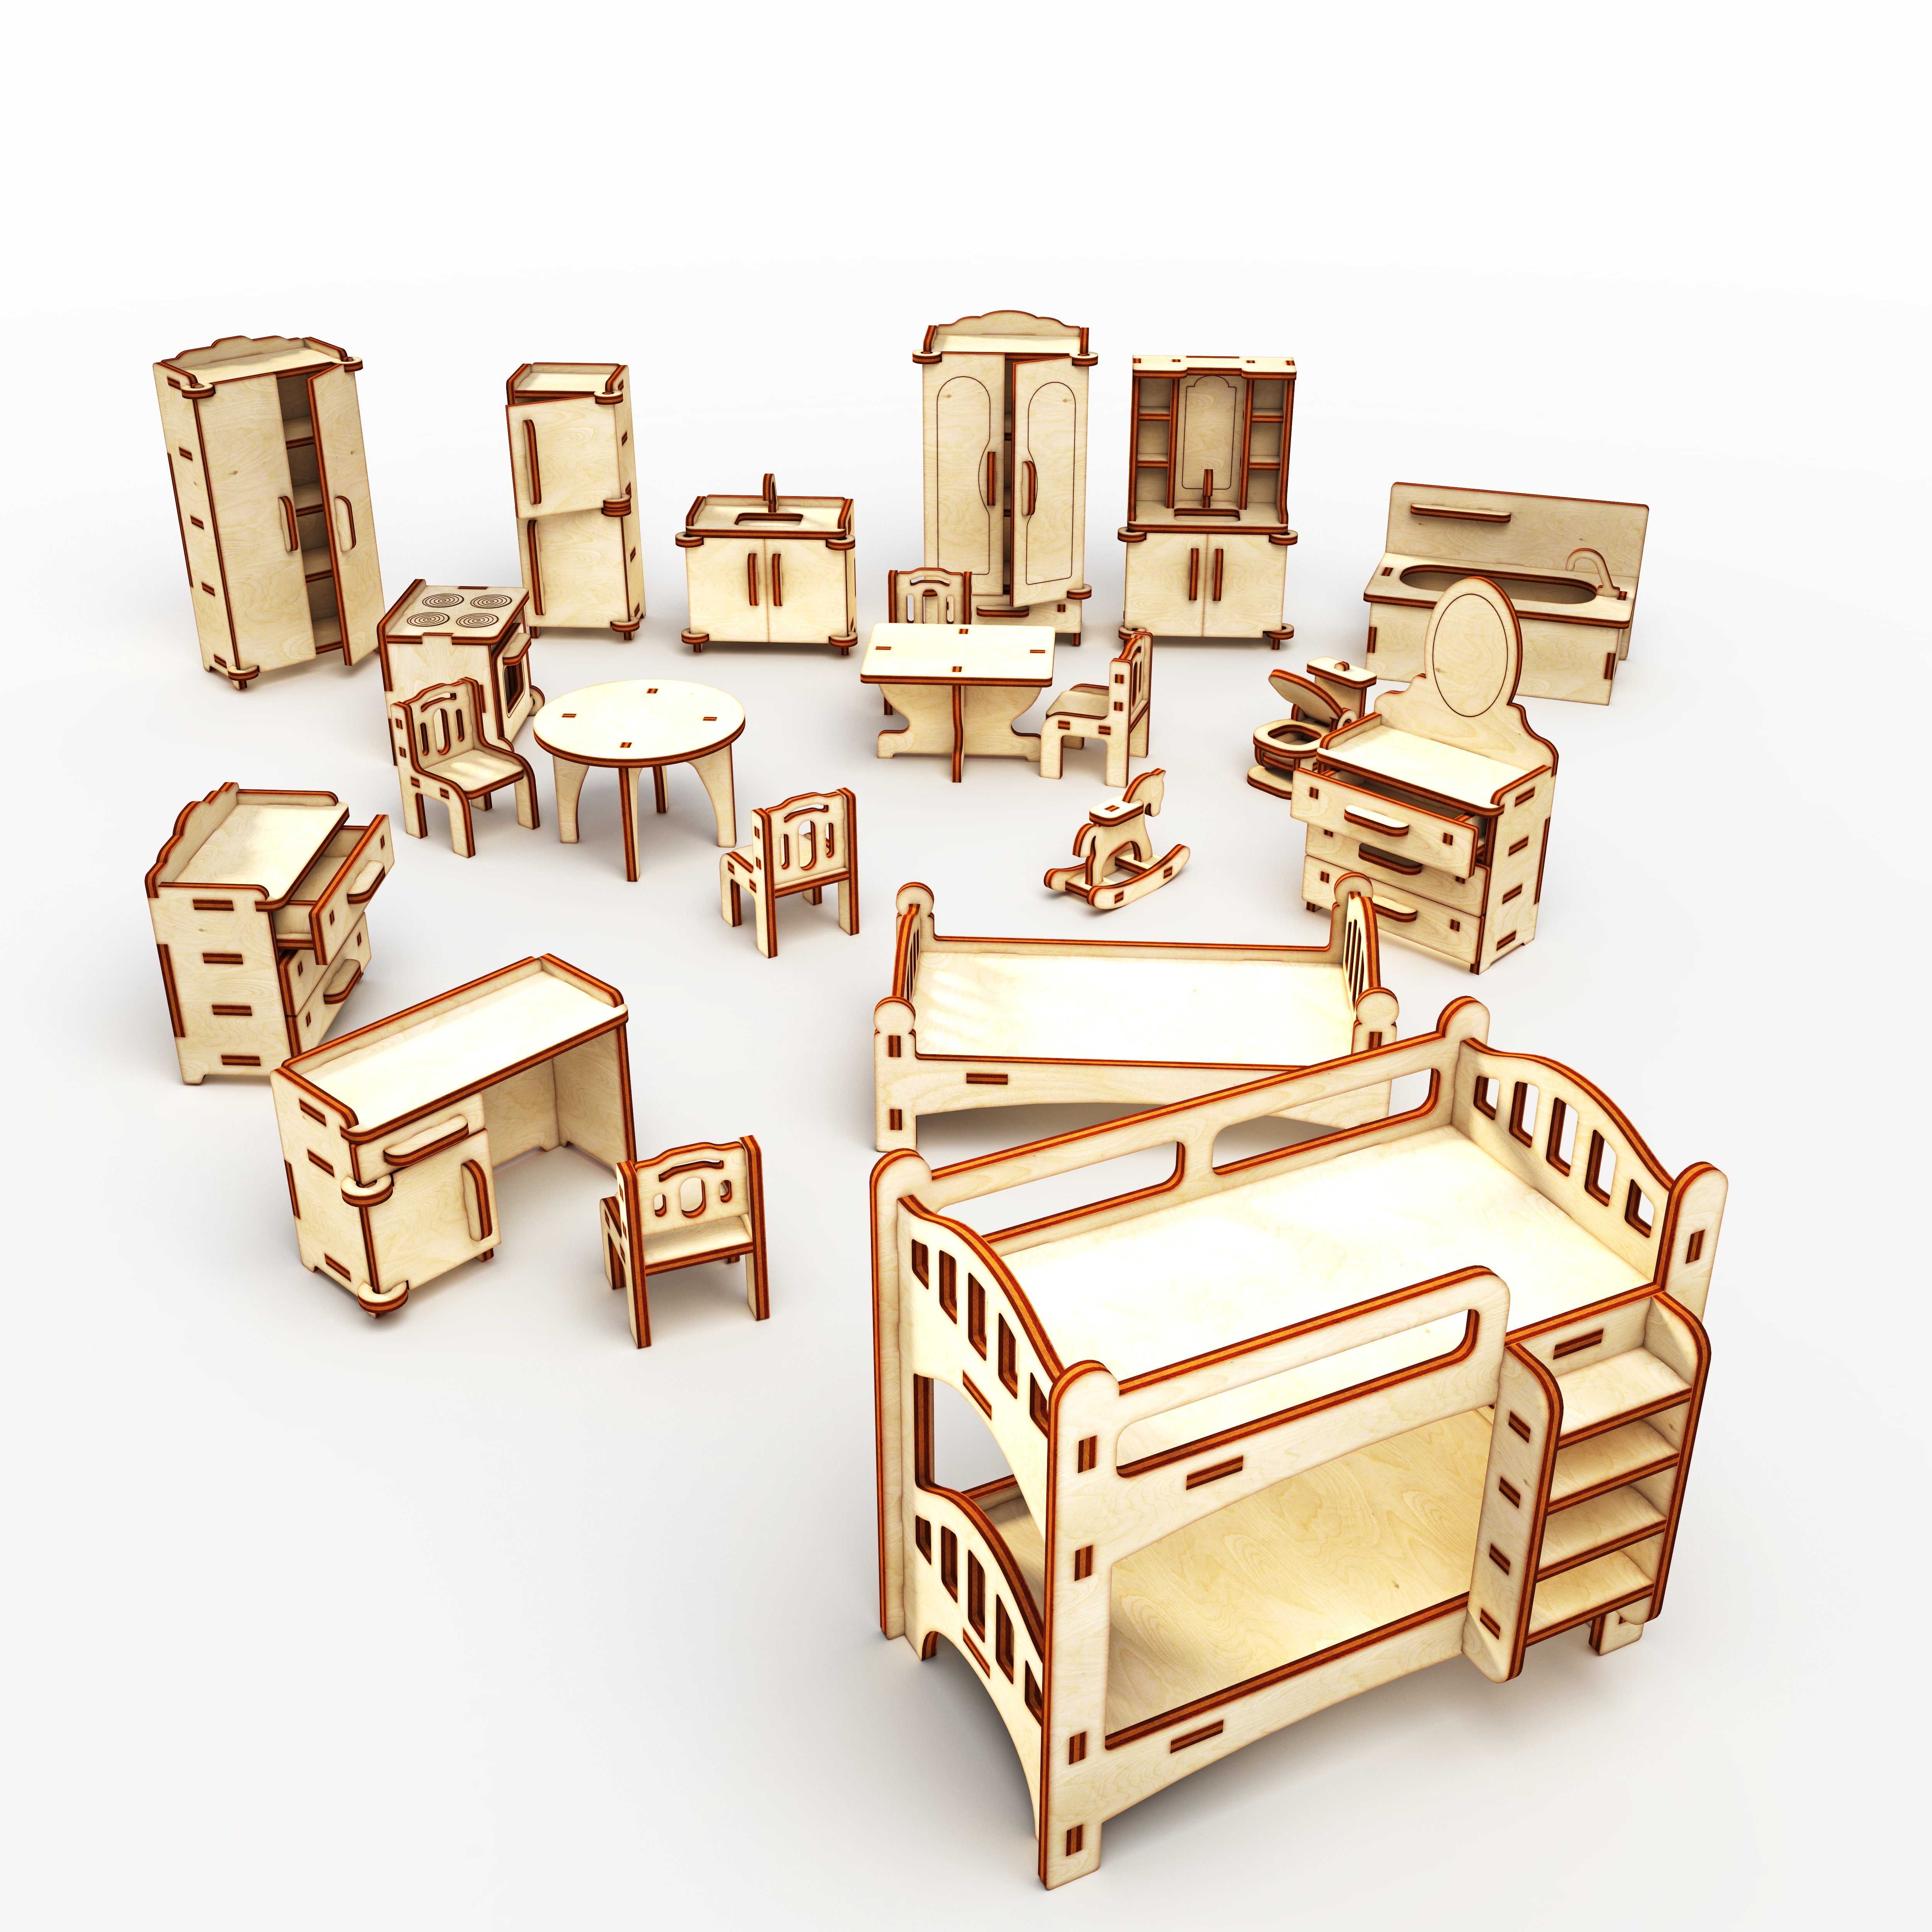 Игрушечный коттедж с набором мебели